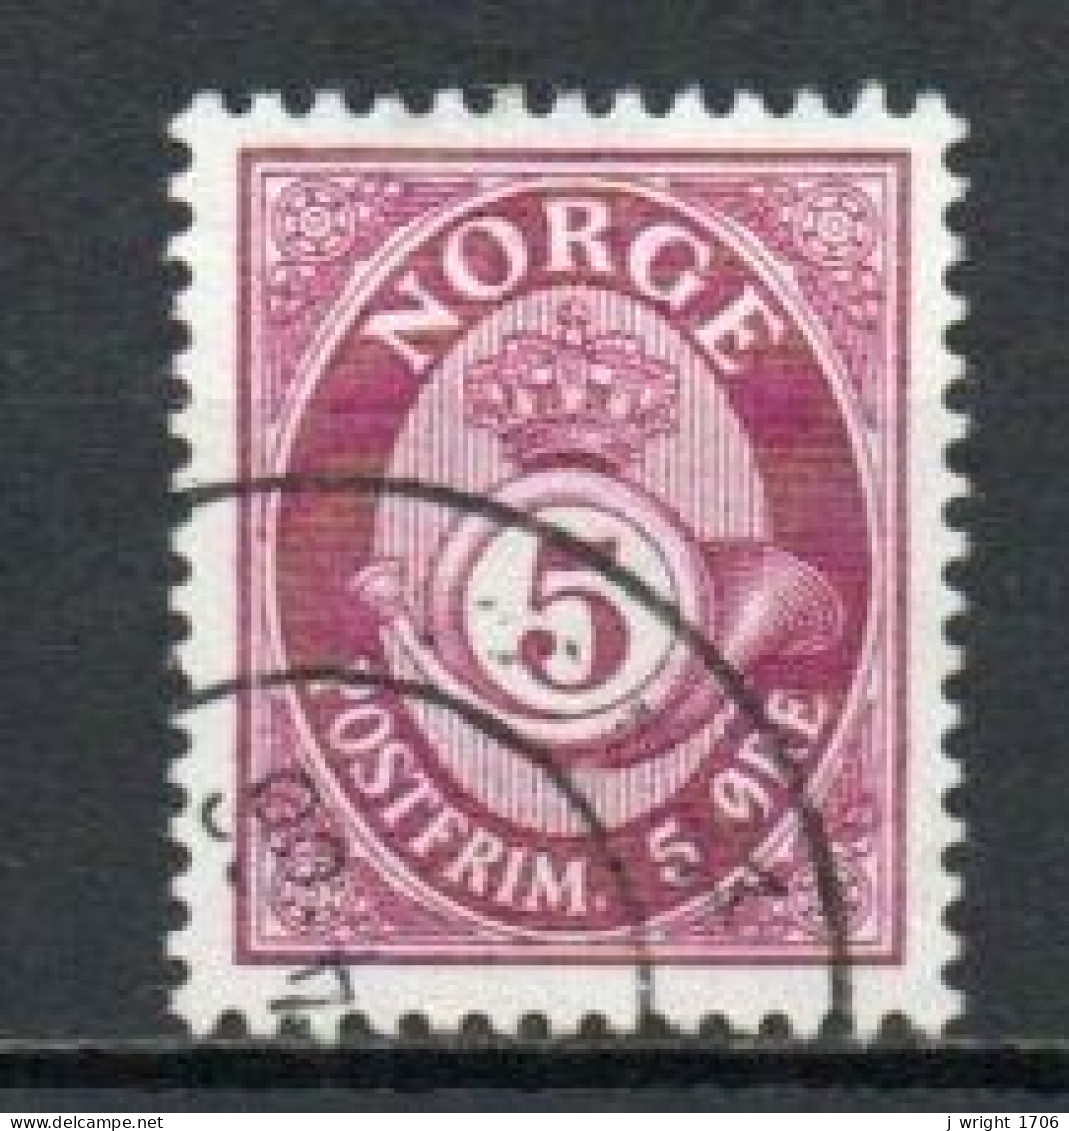 Norway, 1962, Posthorn/Recess, 5ö, USED - Oblitérés